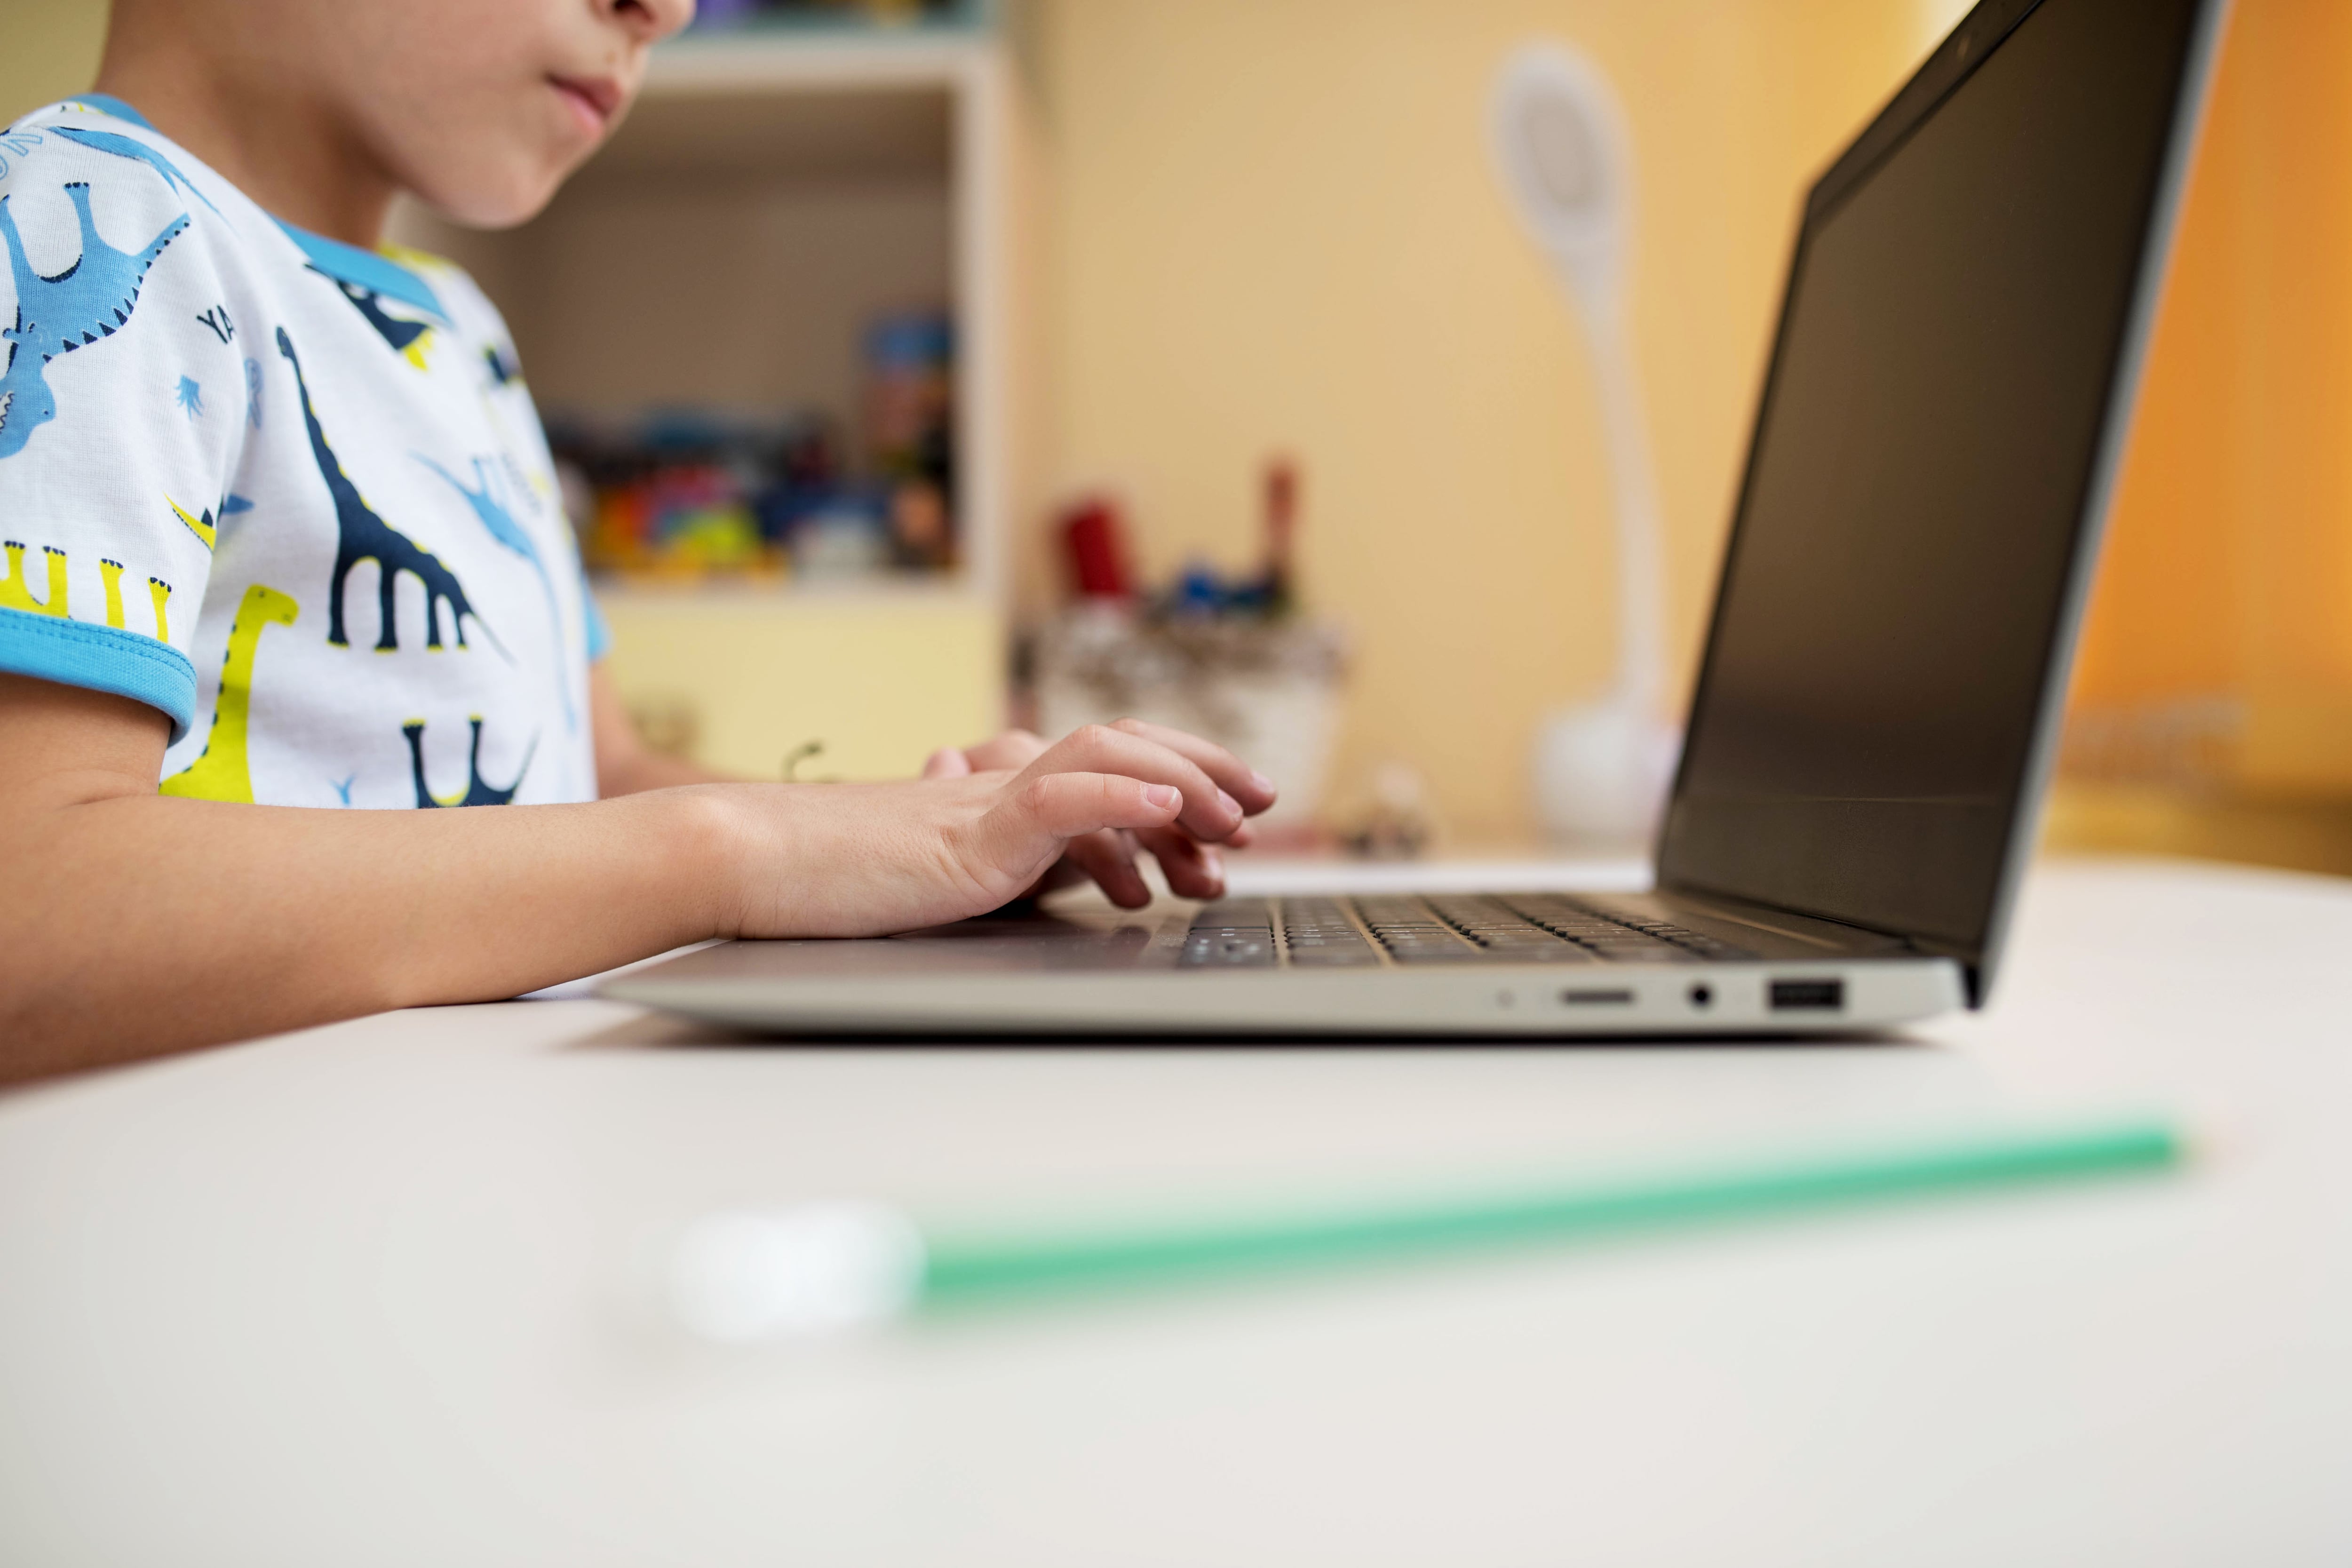 A little boy plays on a laptop.